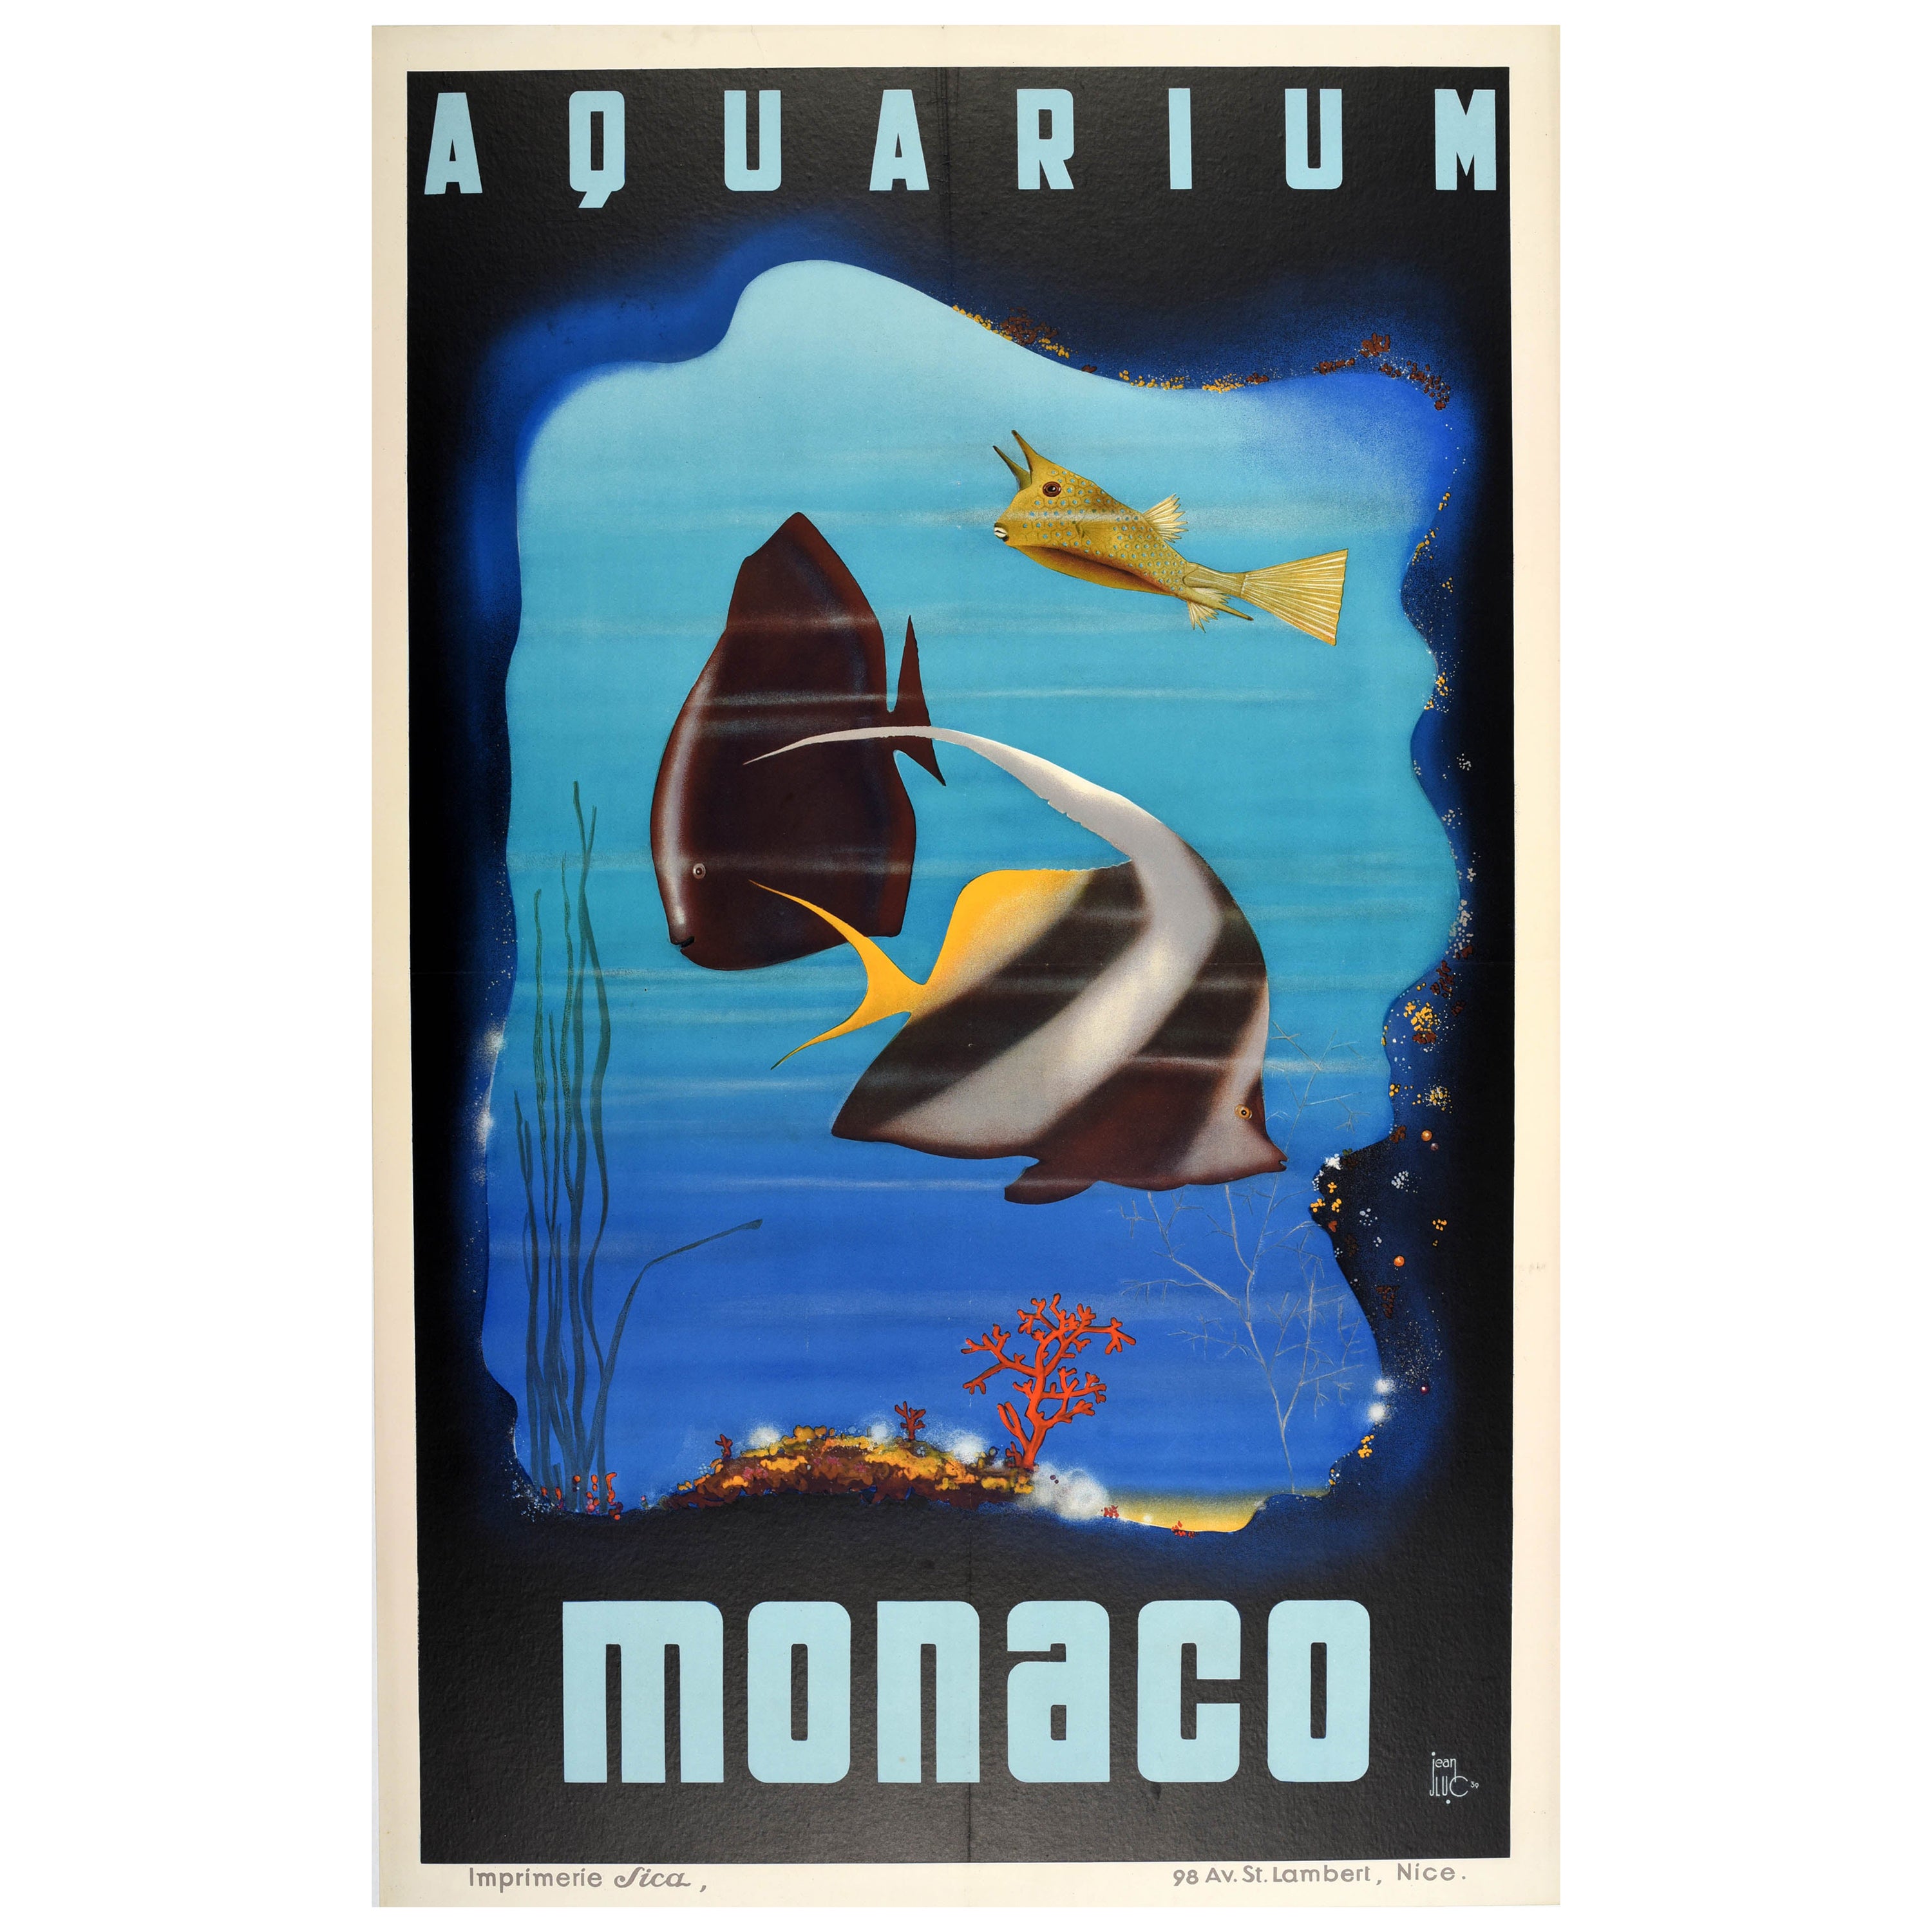 Original Vintage Travel Poster Advertising Monaco Aquarium Art Deco Ocean Museum For Sale